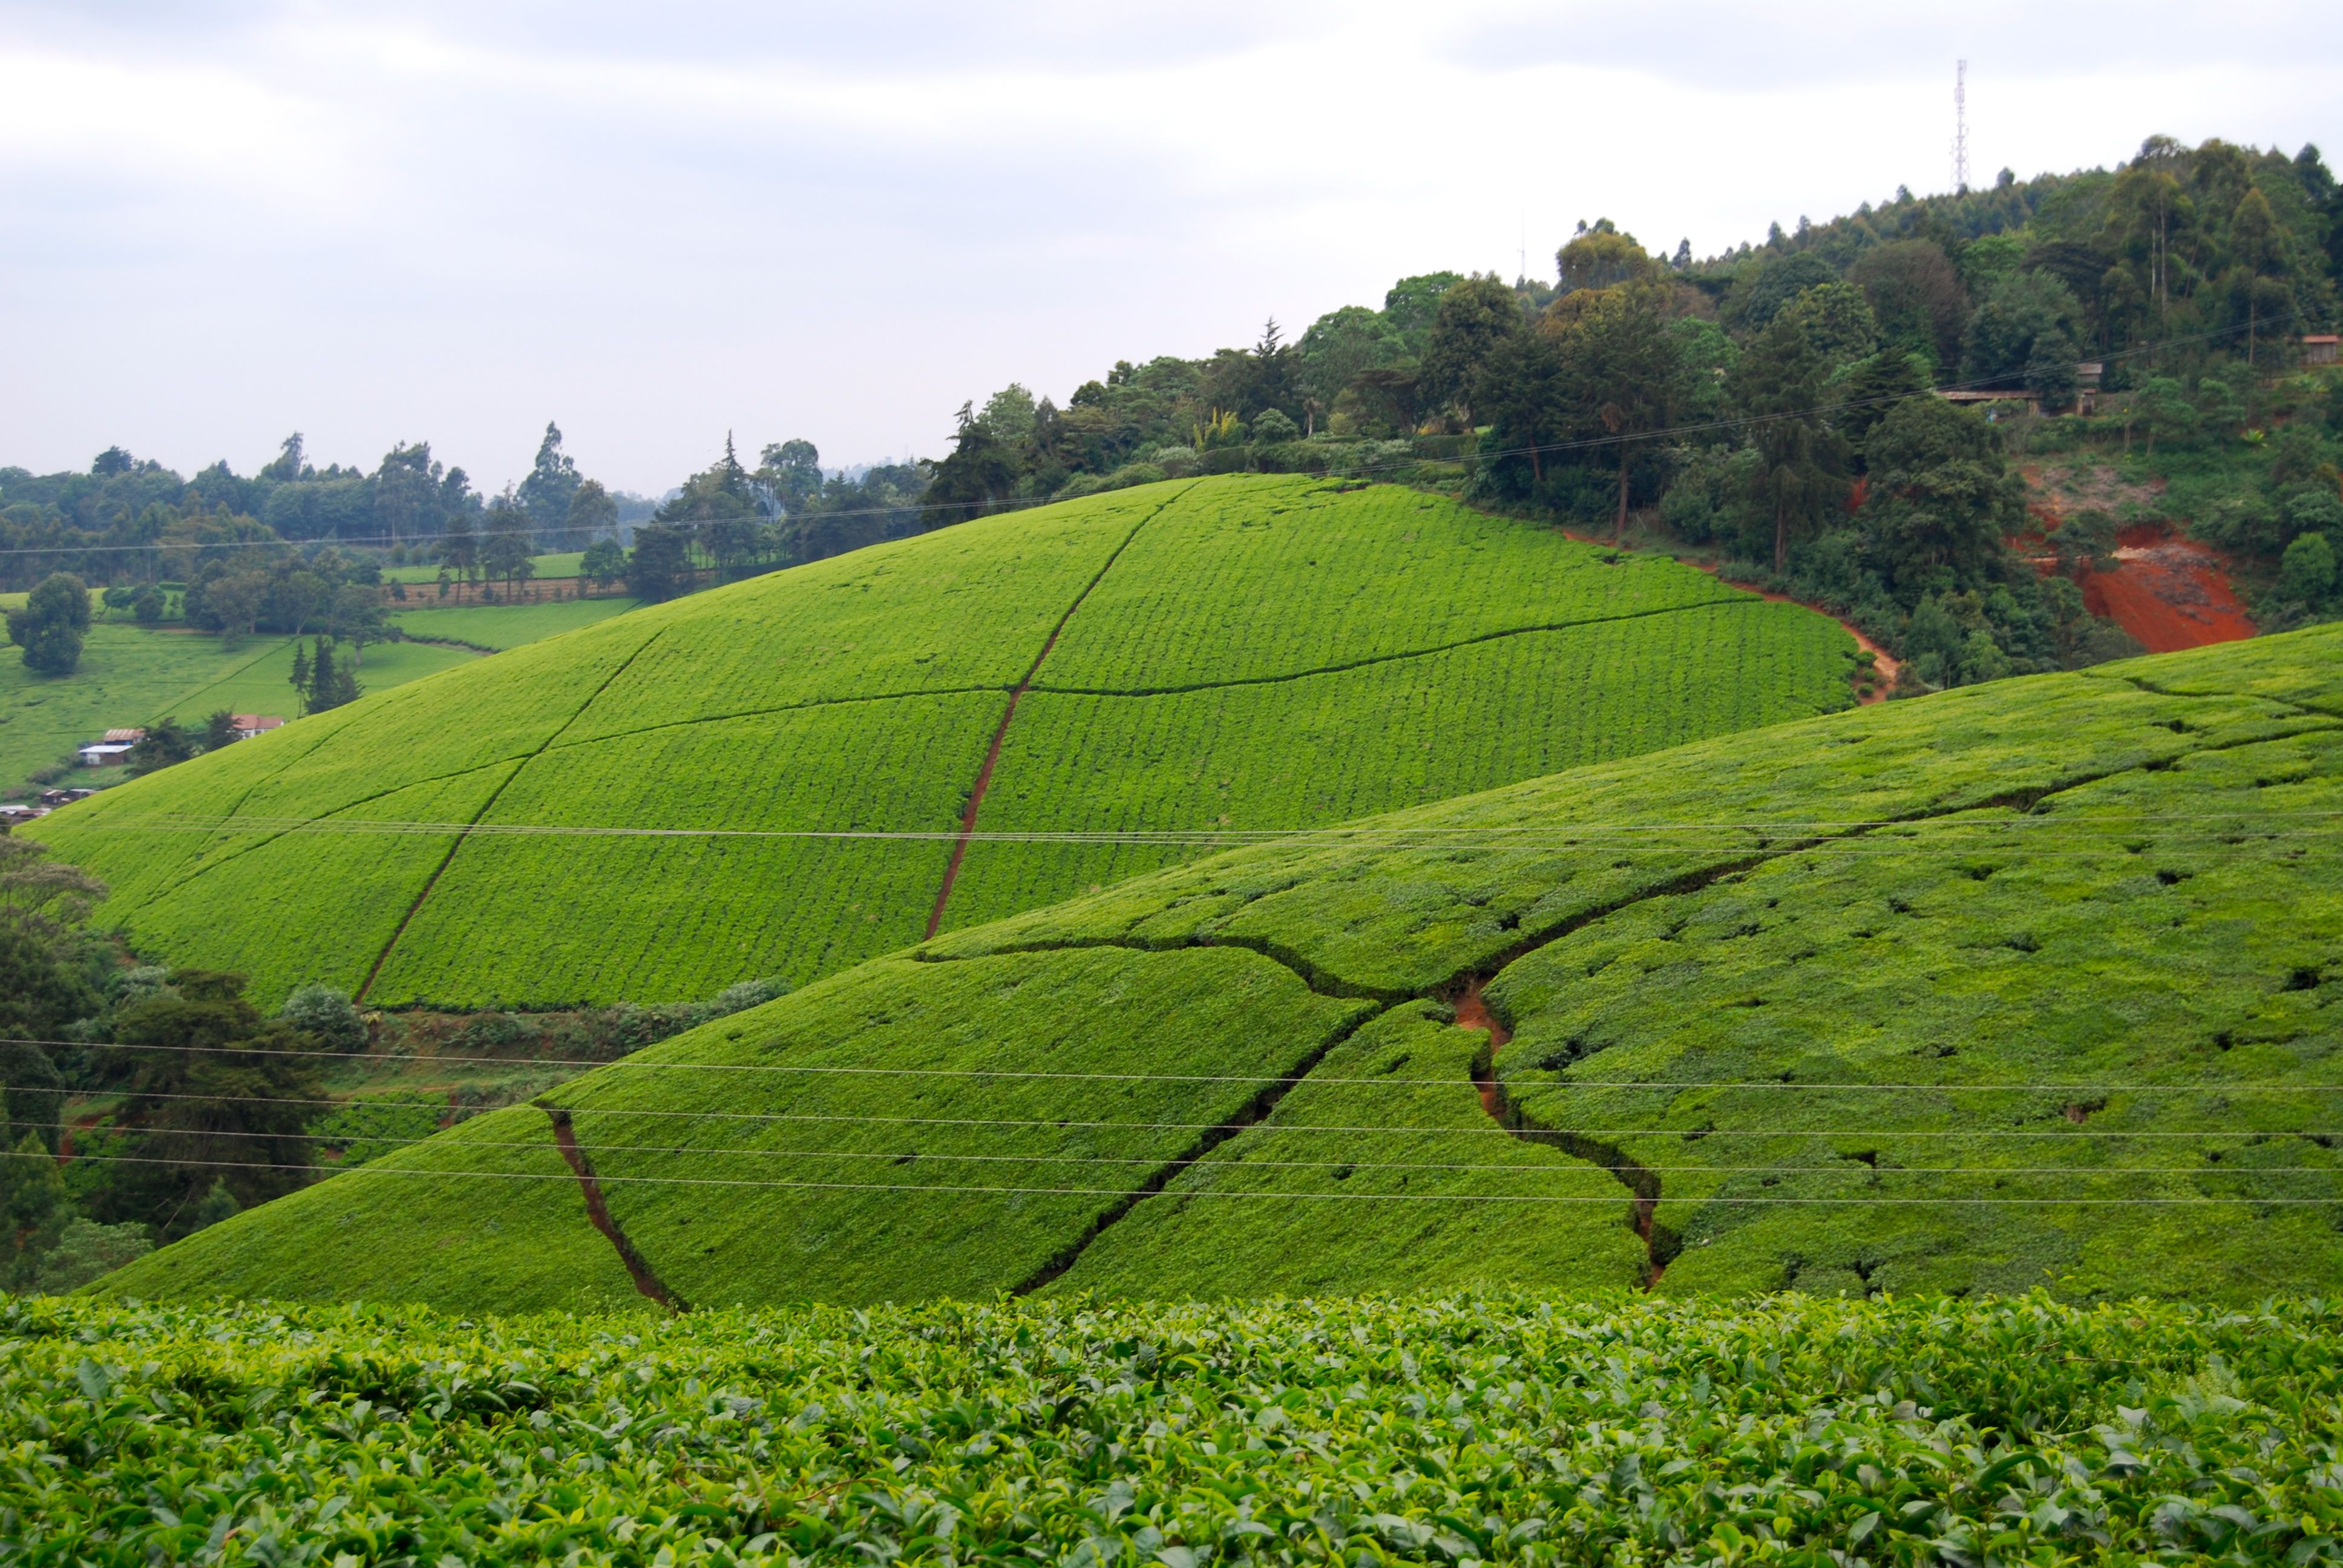 Tea plantation outside of Nairobi, Kenya. It's even more breath